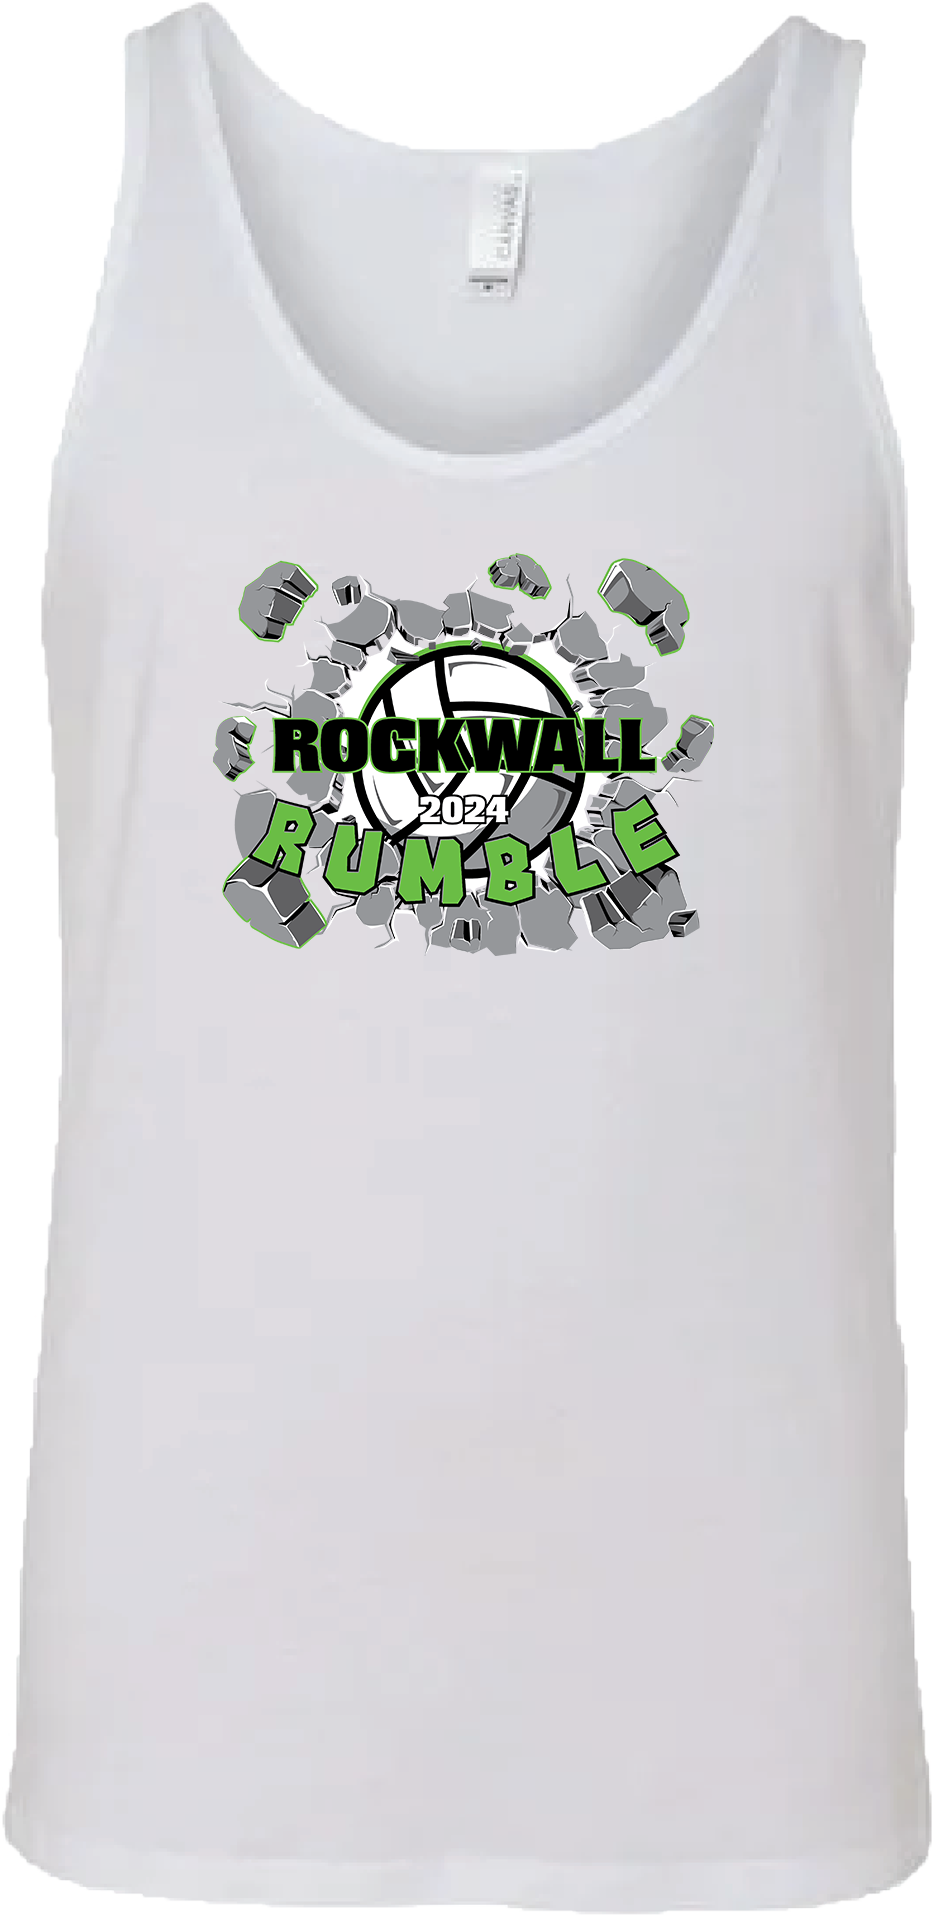 Tank Tops - D2024 Rockwall Rumble